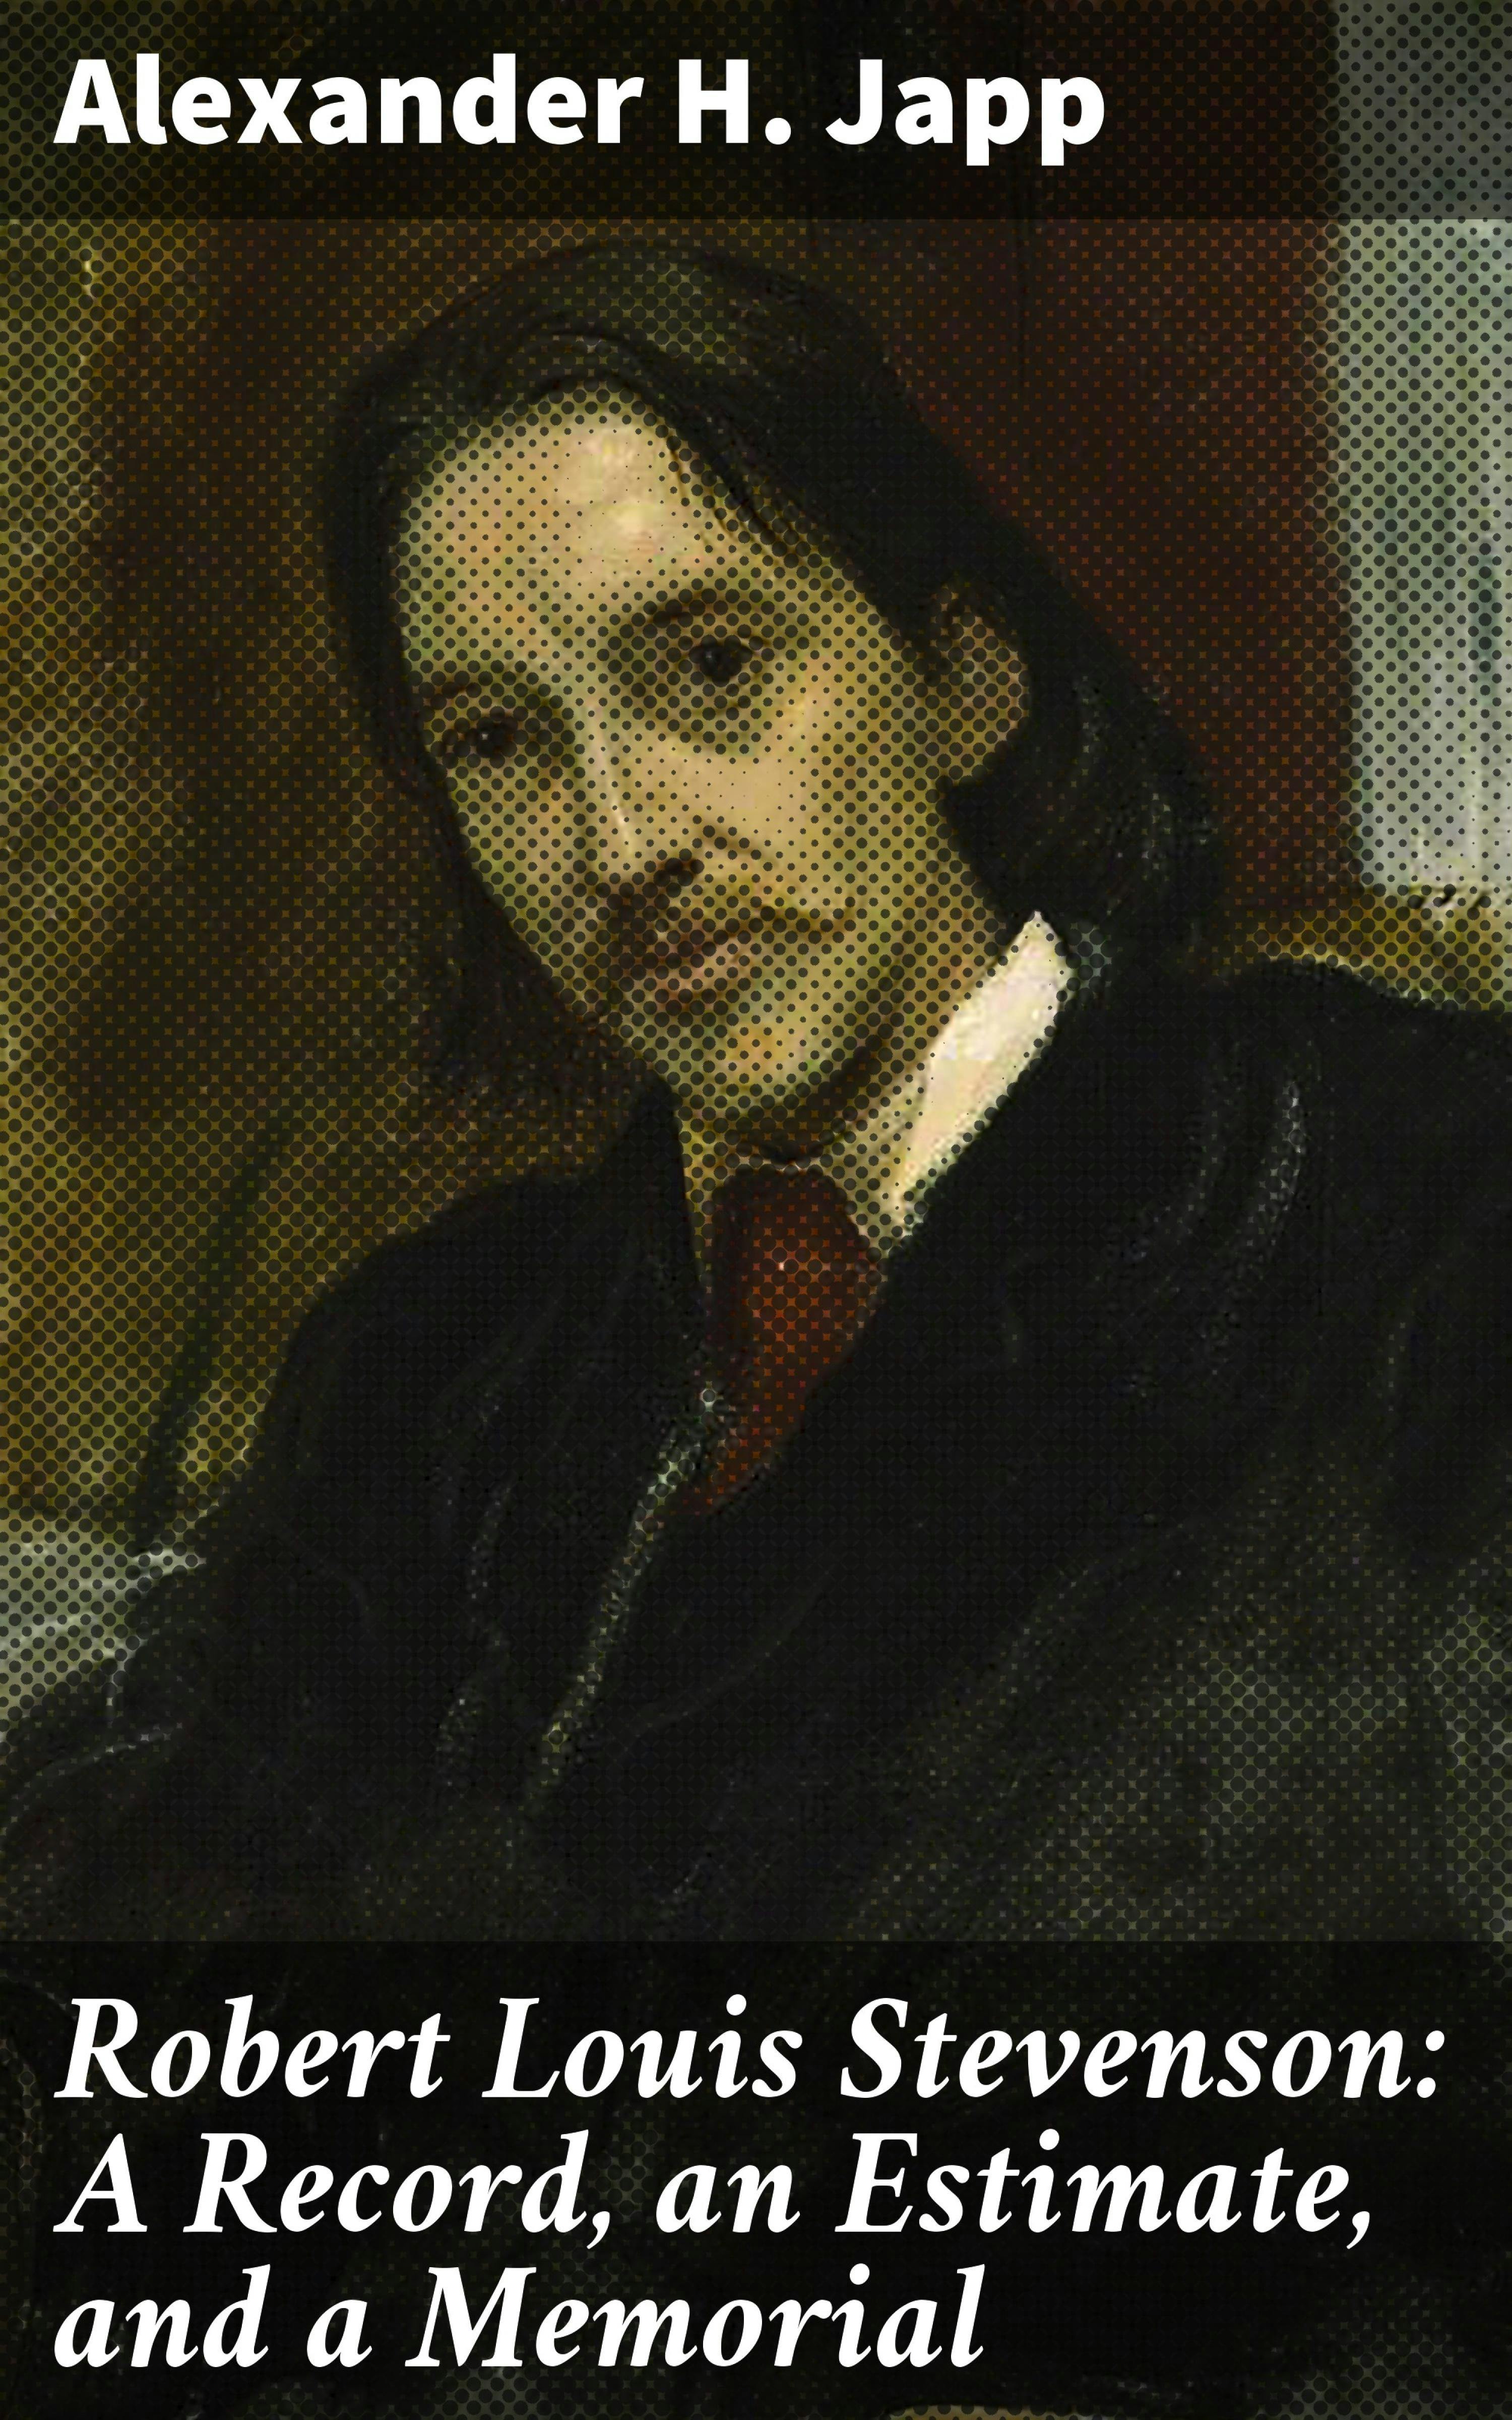 Robert Louis Stevenson: A Record, an Estimate, and a Memorial - Alexander H. Japp